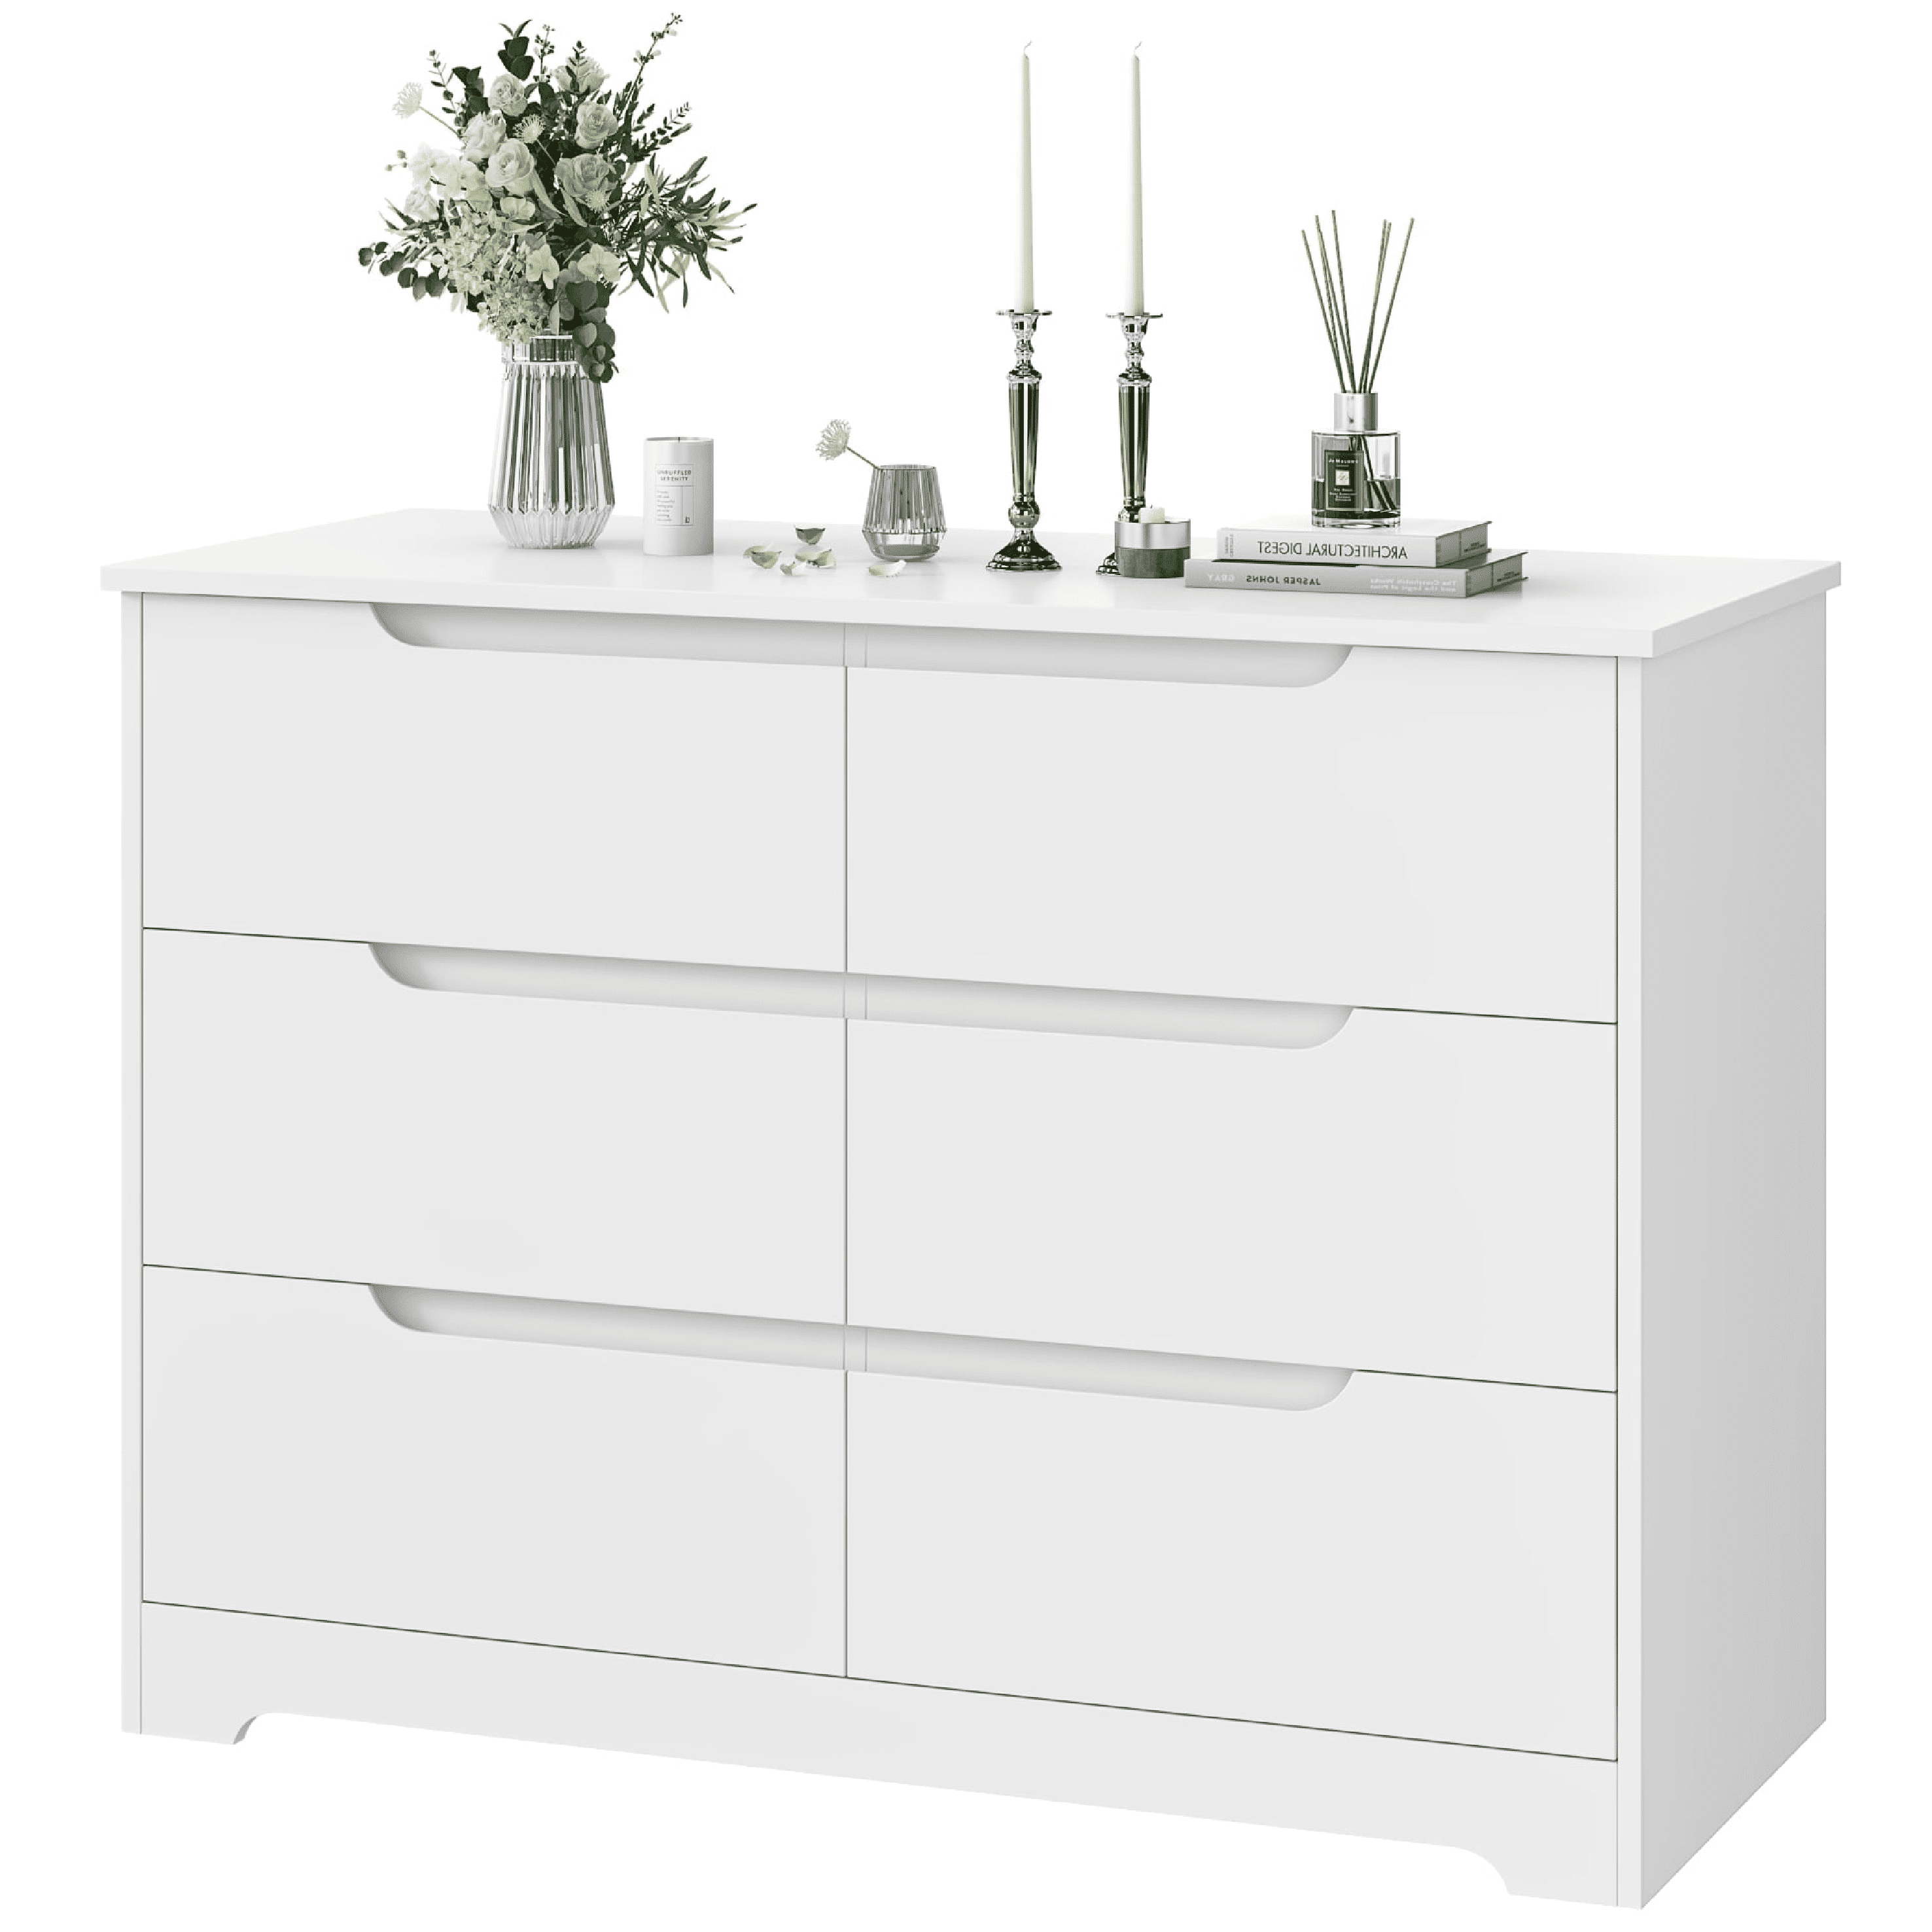 Homfa 6 Drawer White Dresser for Bedroom, Modern Chest of Drawers Wood ...